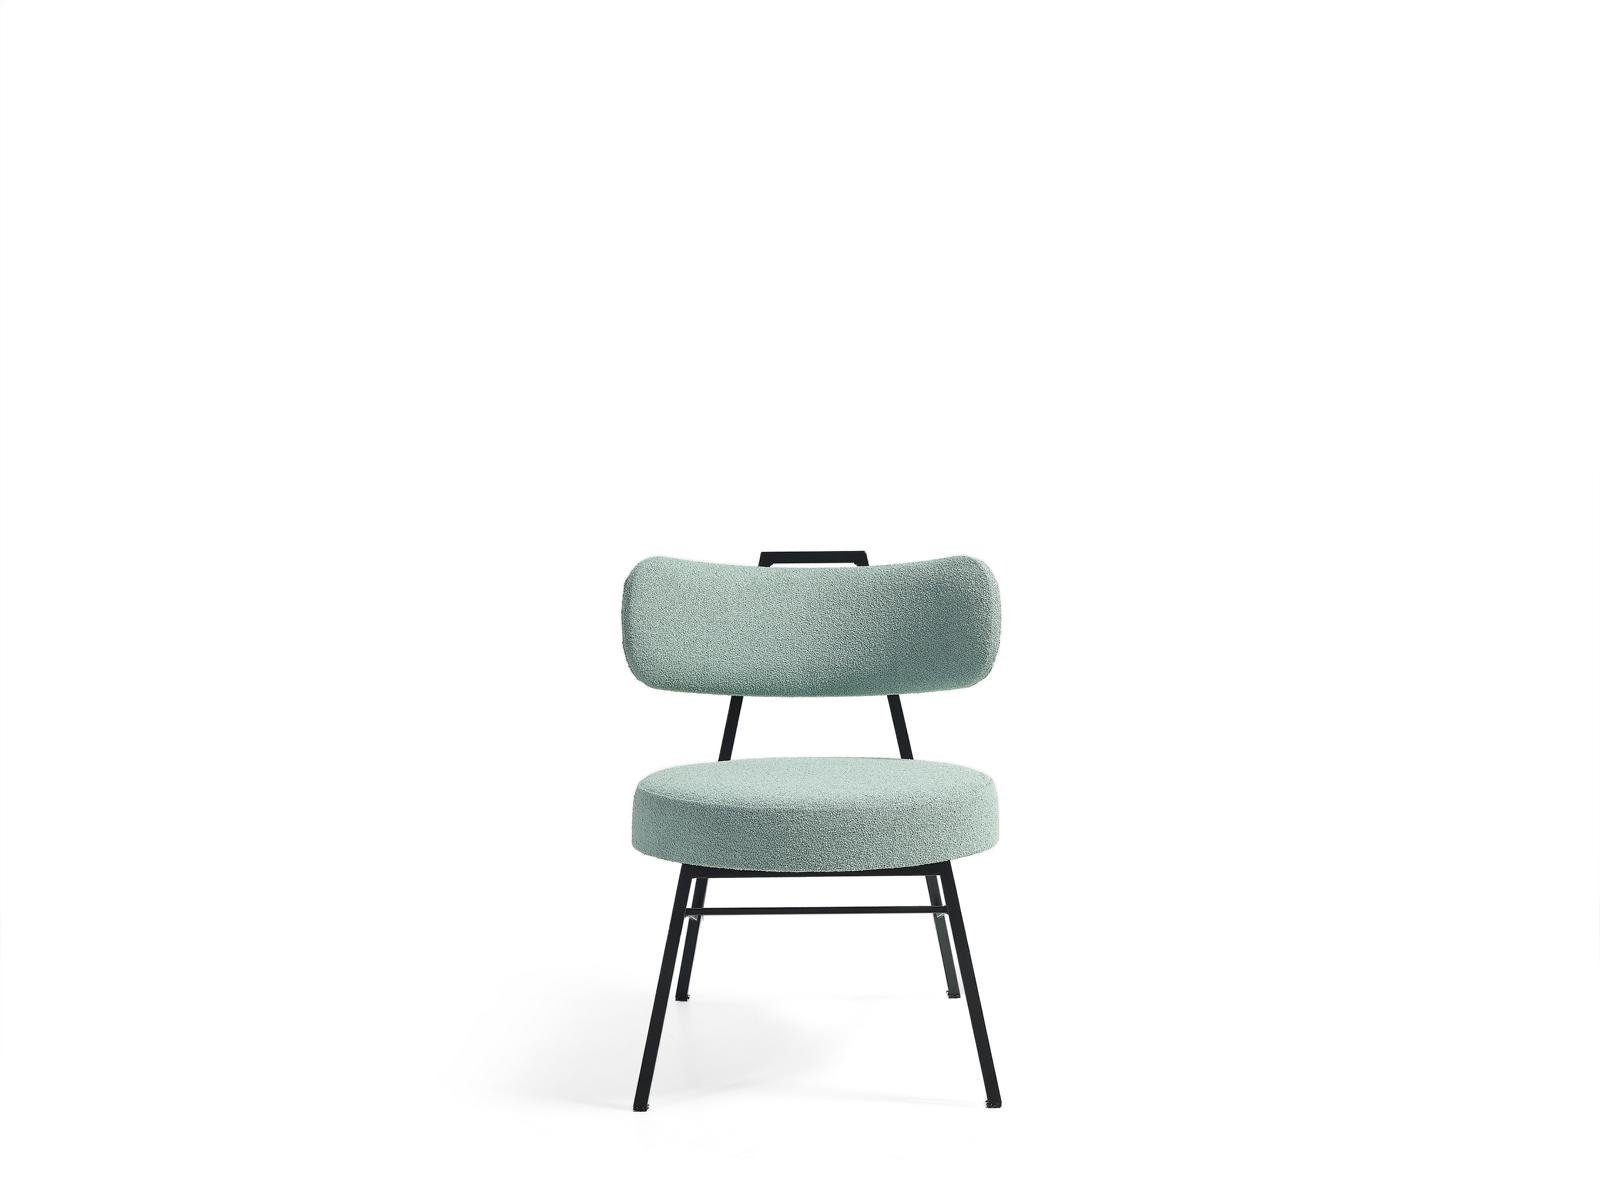 Modern Europe Stuhl JVmoebel Esszimmer Italienischer Stil Design, Luxus Esszimmerstuhl Stühle Made in